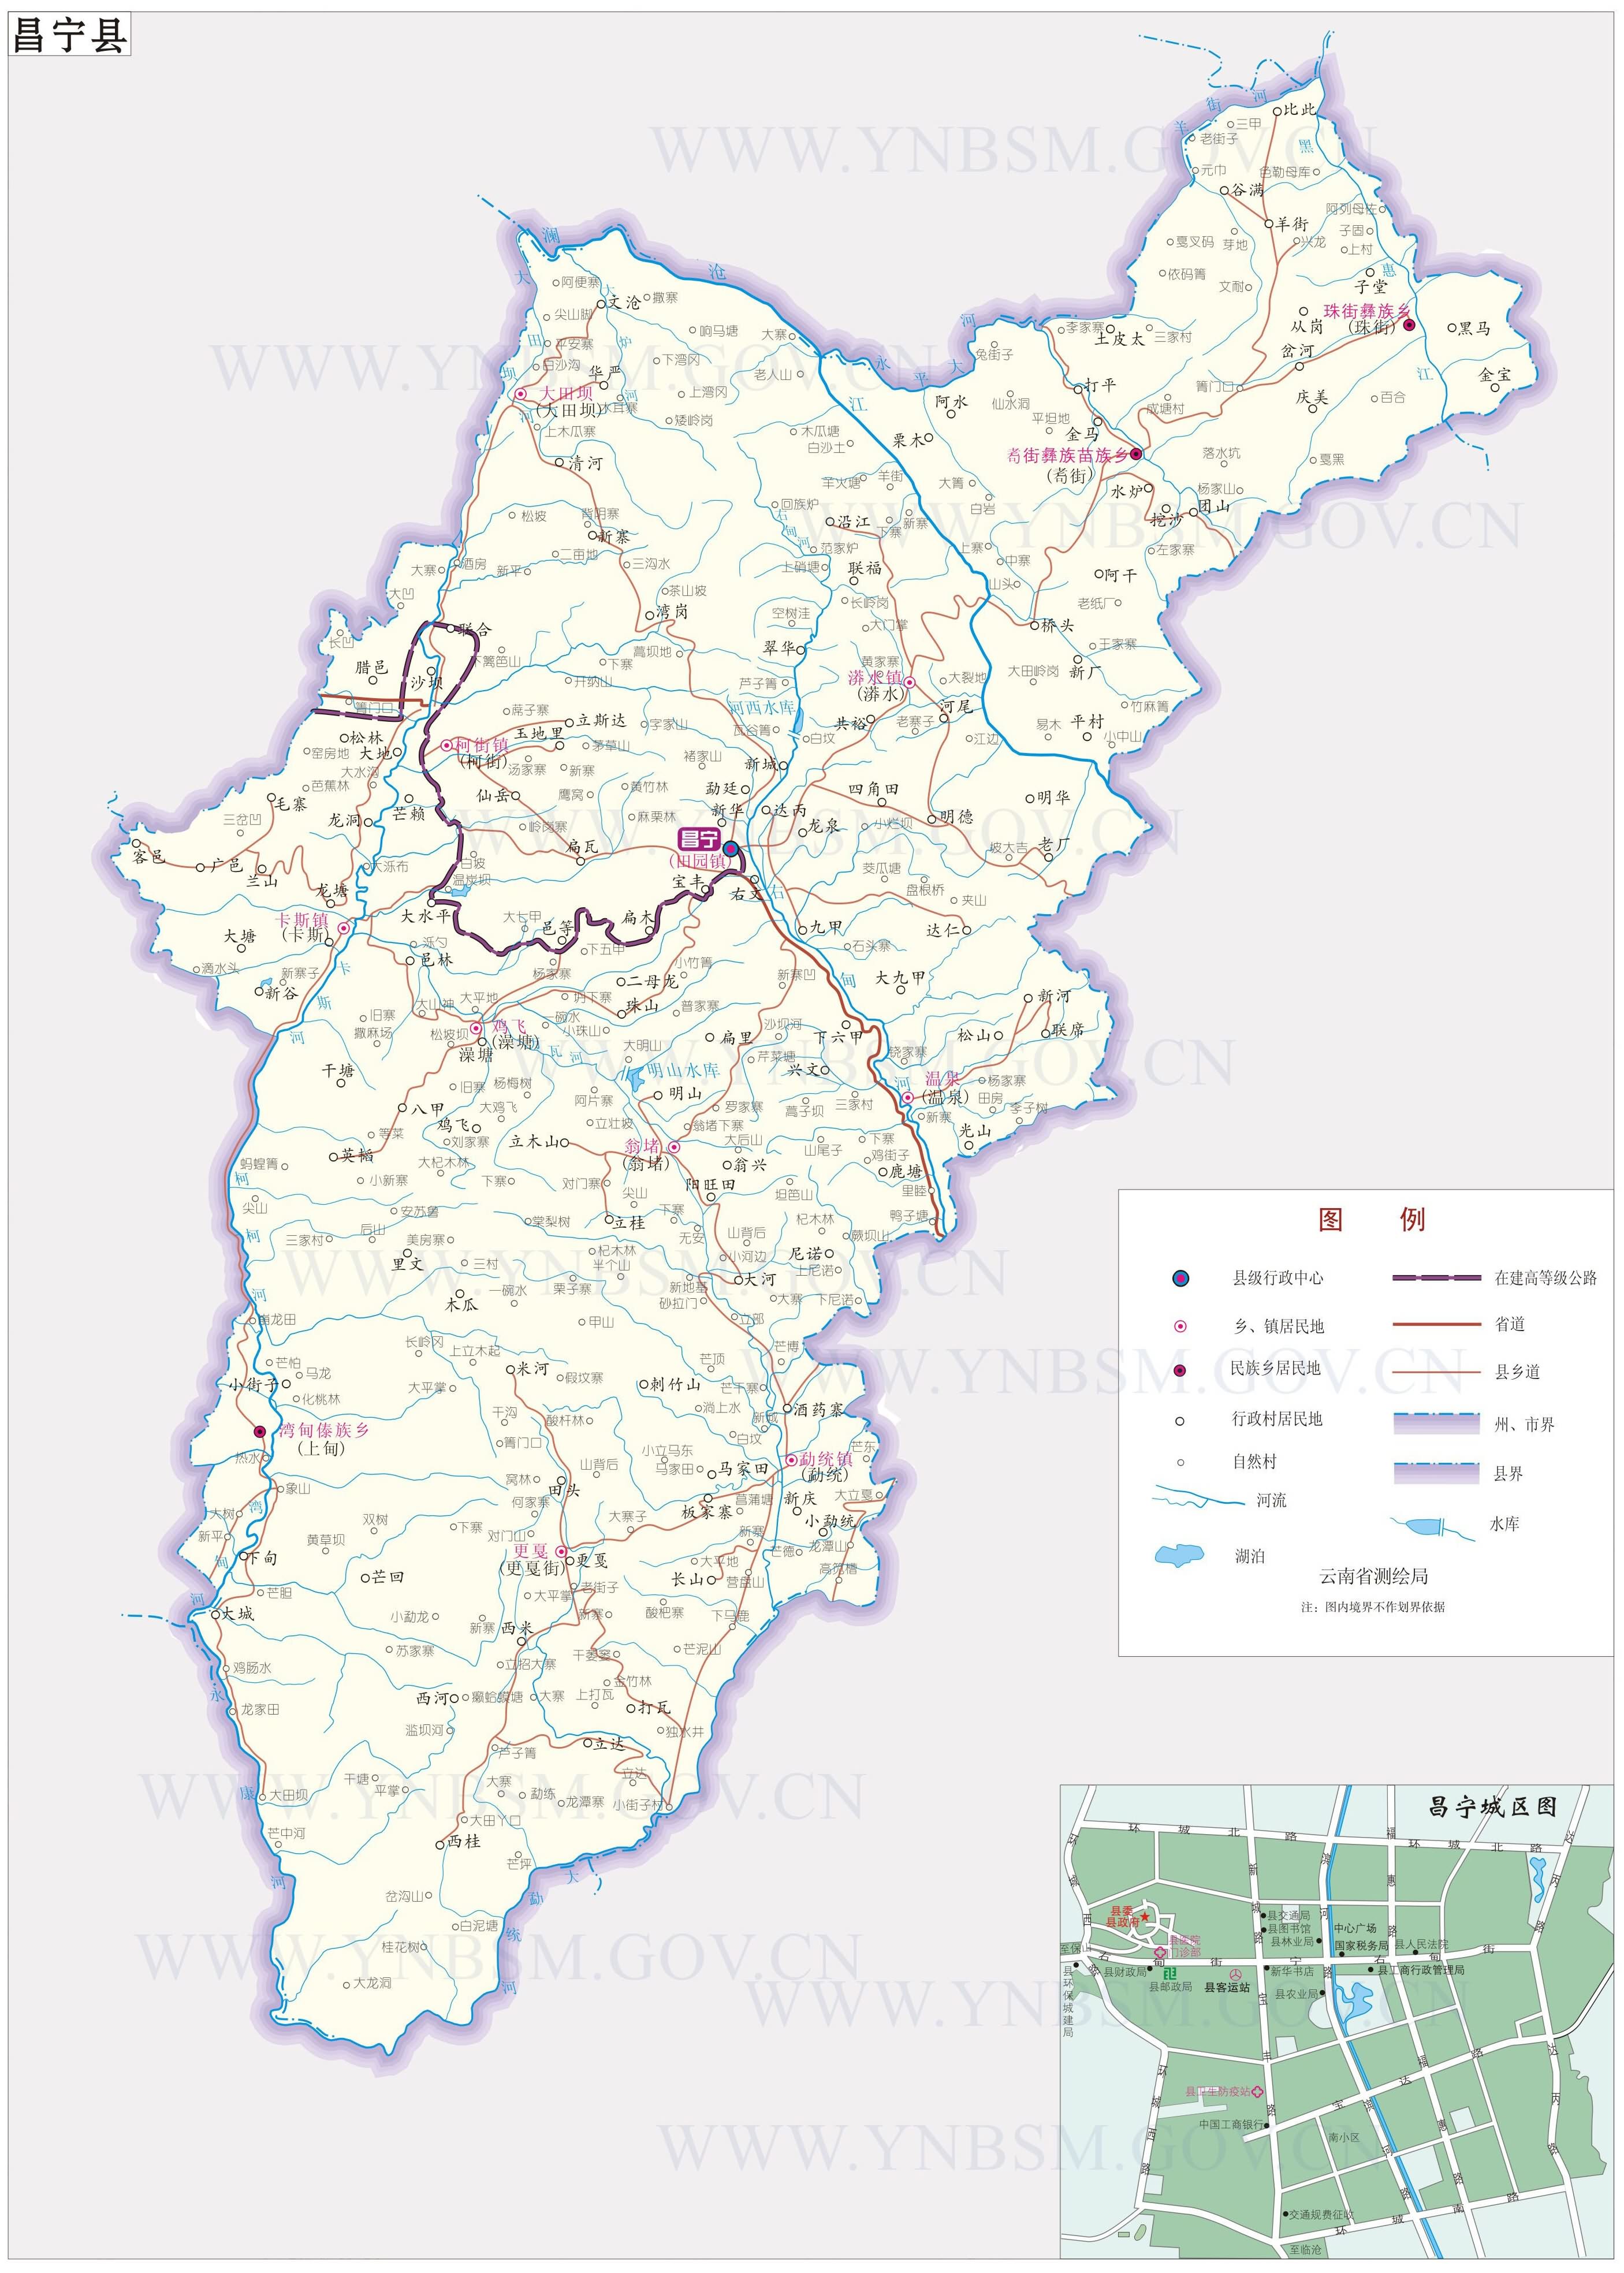 腾冲县地图 - 保山市地图 - 地理教师网